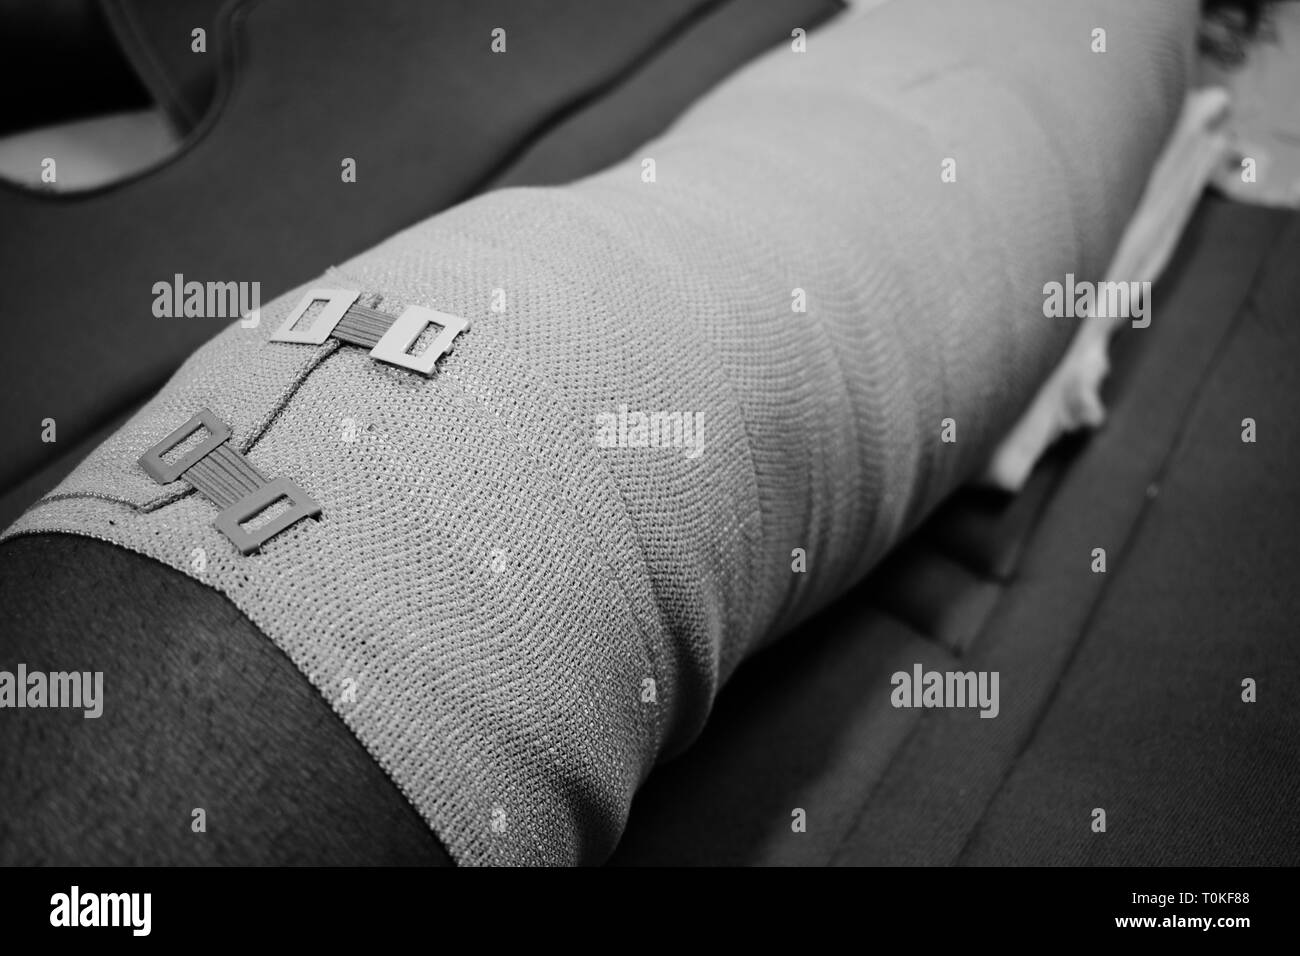 Bandage on an injured knee leg Stock Photo